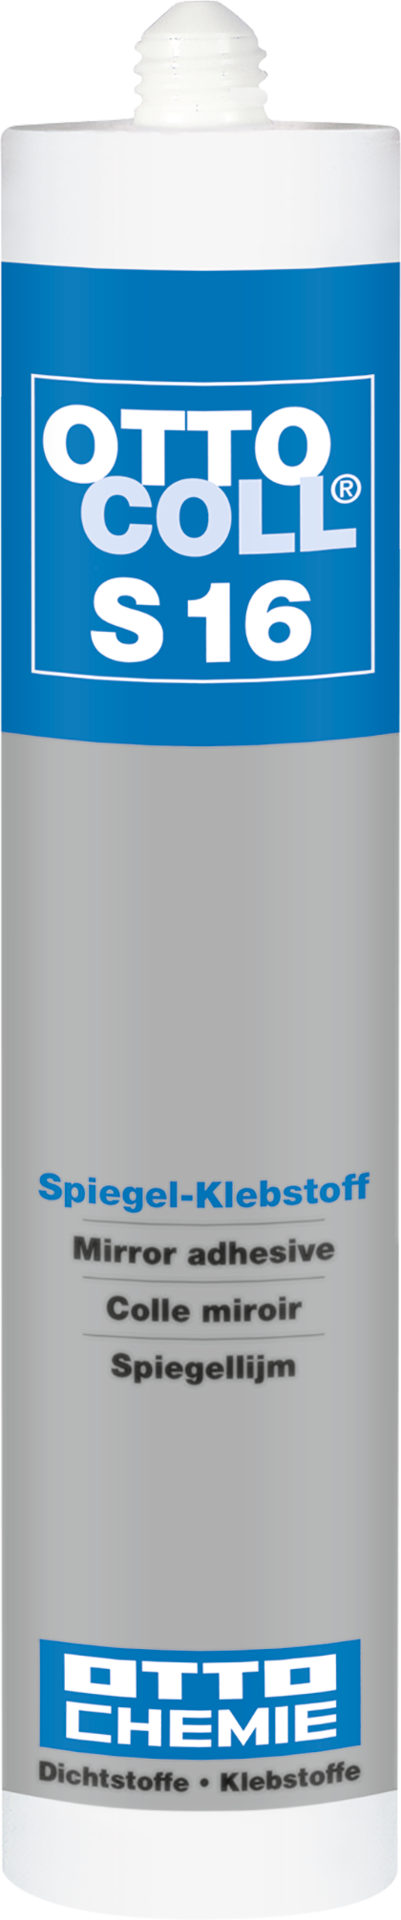 OTTOCOLL® S16 - Der Spiegel-Klebstoff 310 ml mintweiß